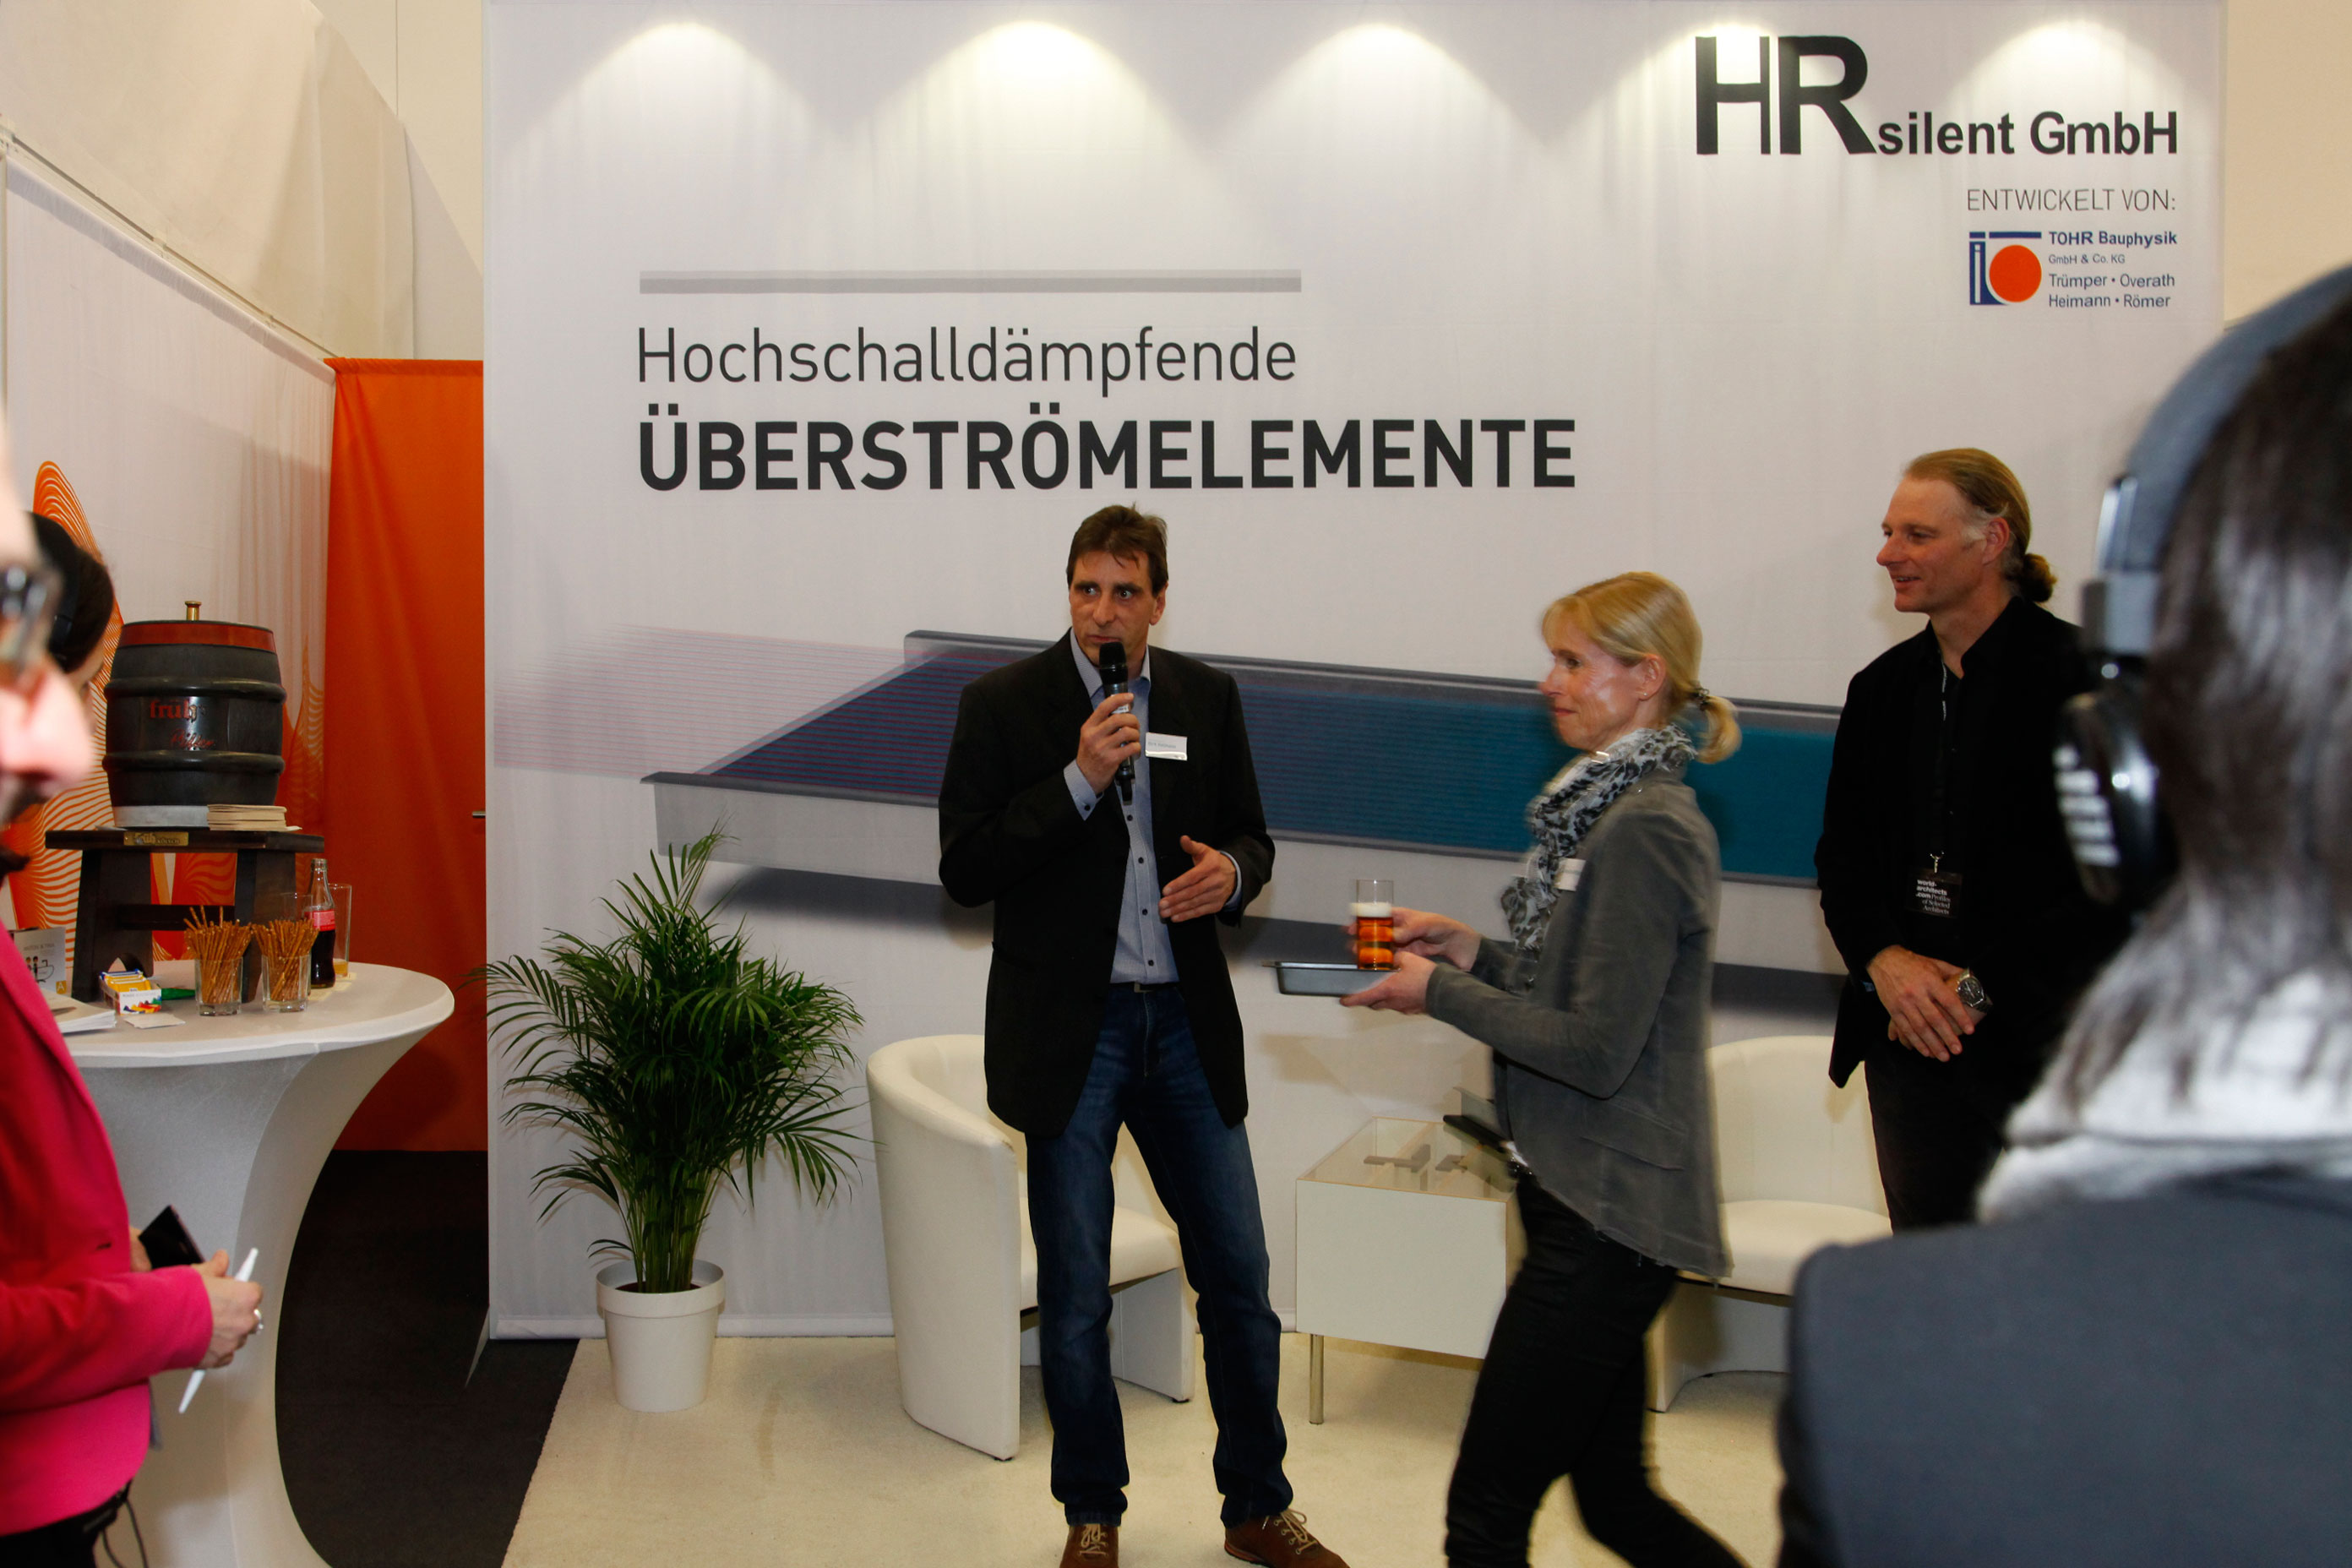 Prof. Markus Pfeil «Innovative, effiziente und integrierte Produkte» at Hrsilent